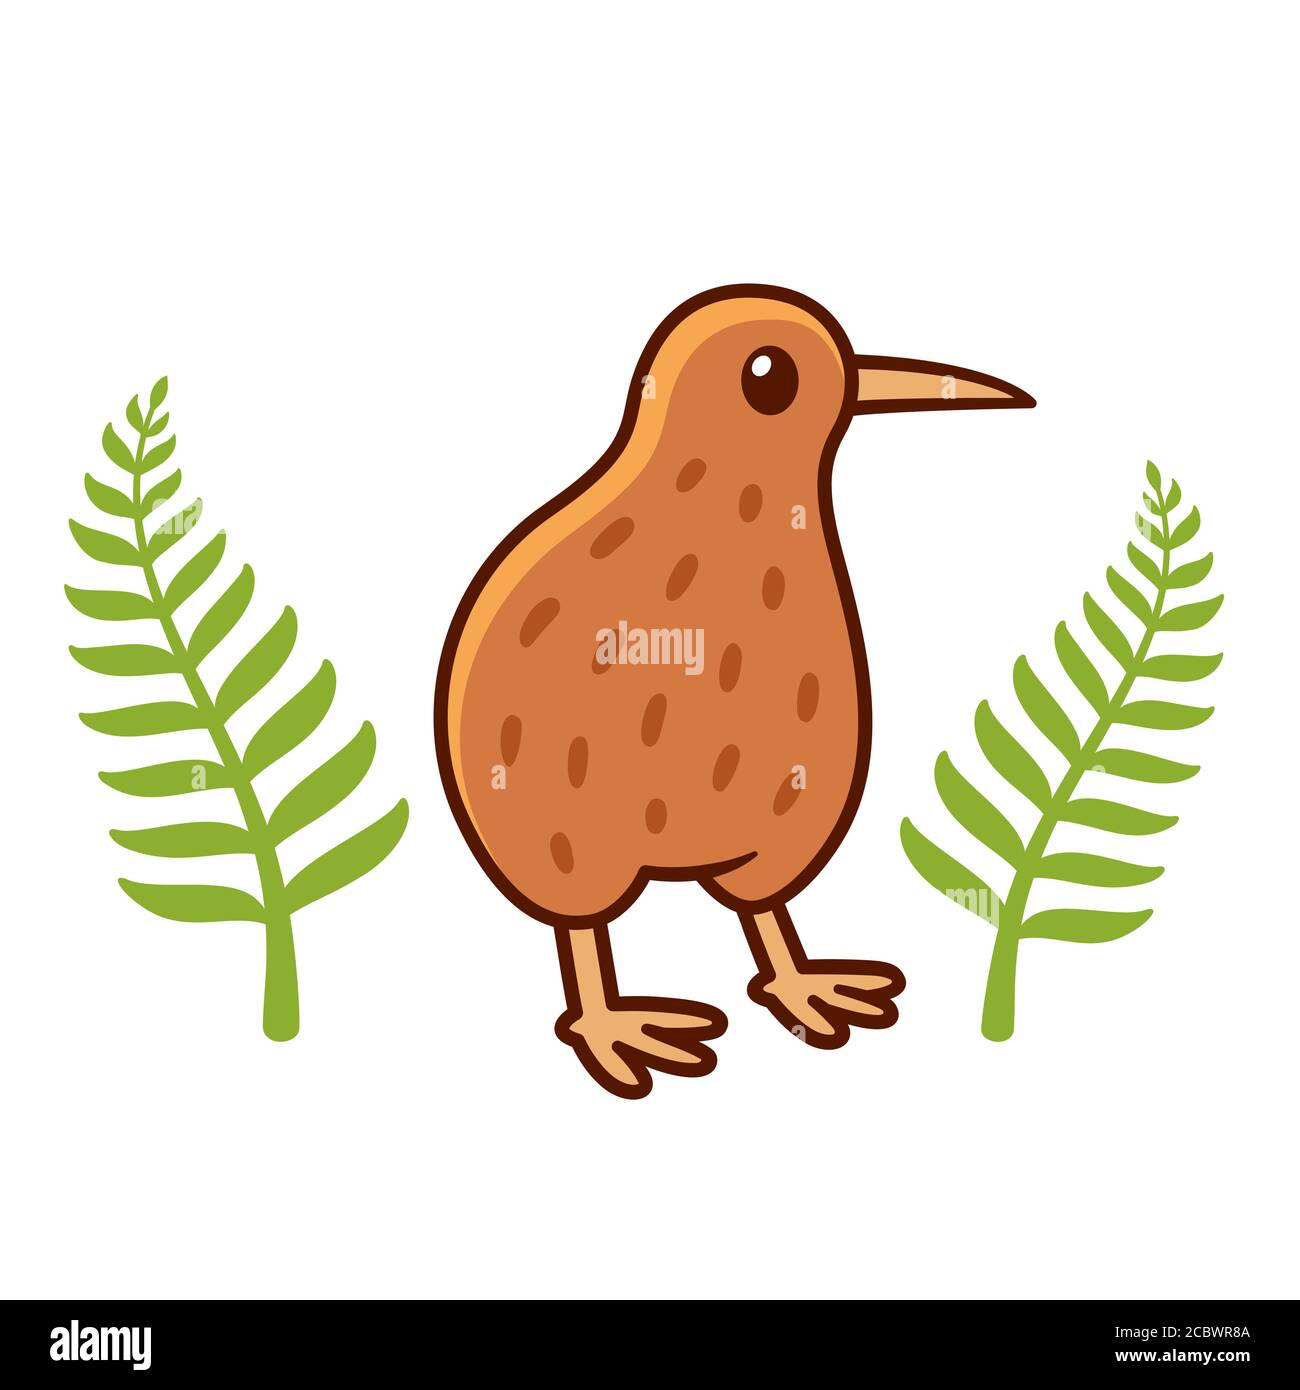 Joli dessin d'oiseau kiwi avec des feuilles de fougères argentées, symbole national de la Nouvelle-Zélande. Illustration de clip art vectoriel isolée. Illustration de Vecteur